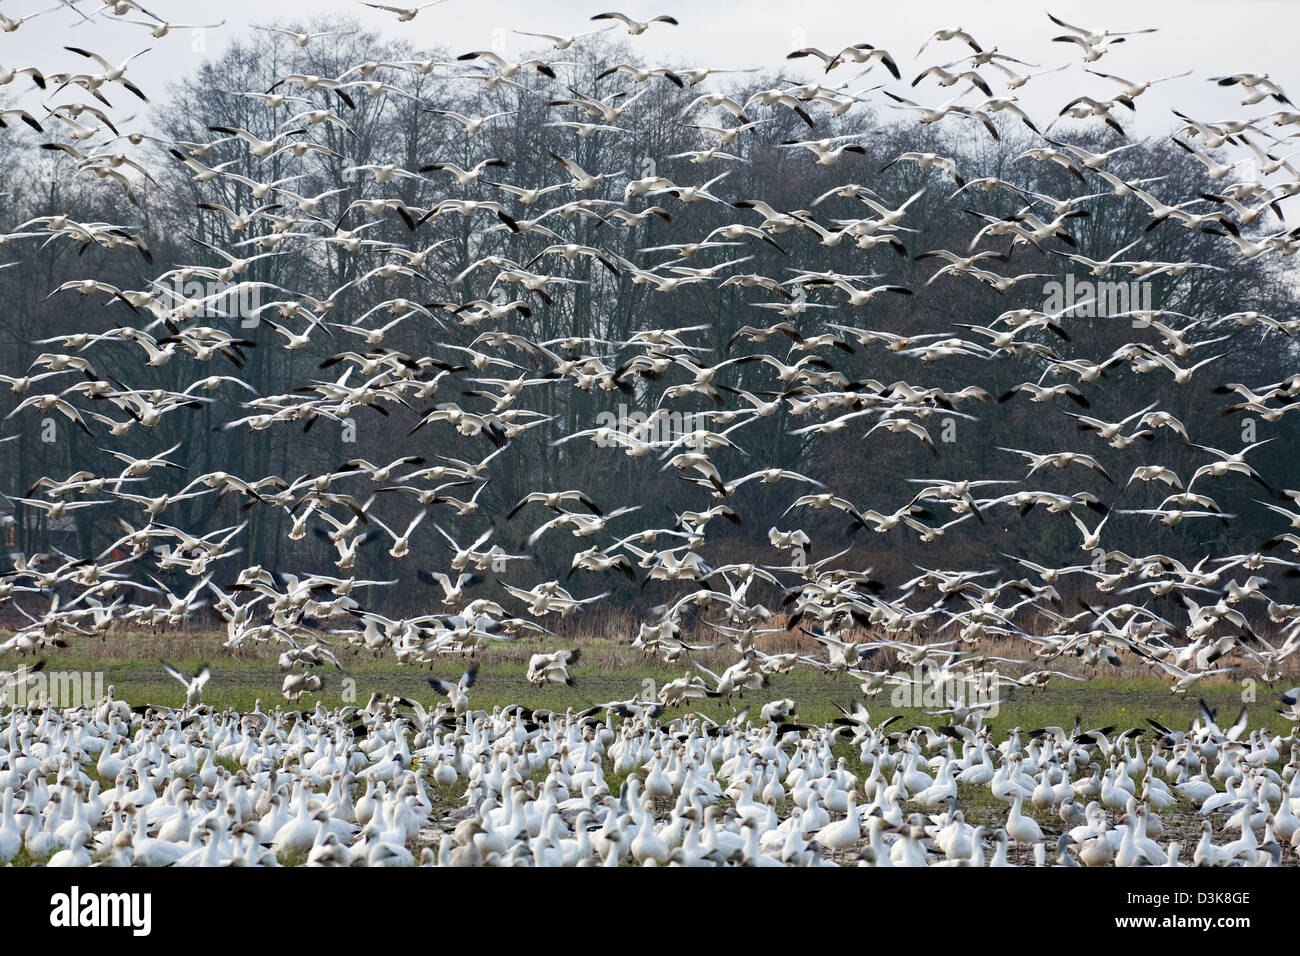 Un grand troupeau d'oies blanches dans un champ agricole d'être rejoint par un second groupe sur l'île de sapin dans le Delta de la rivière Skagit. Banque D'Images